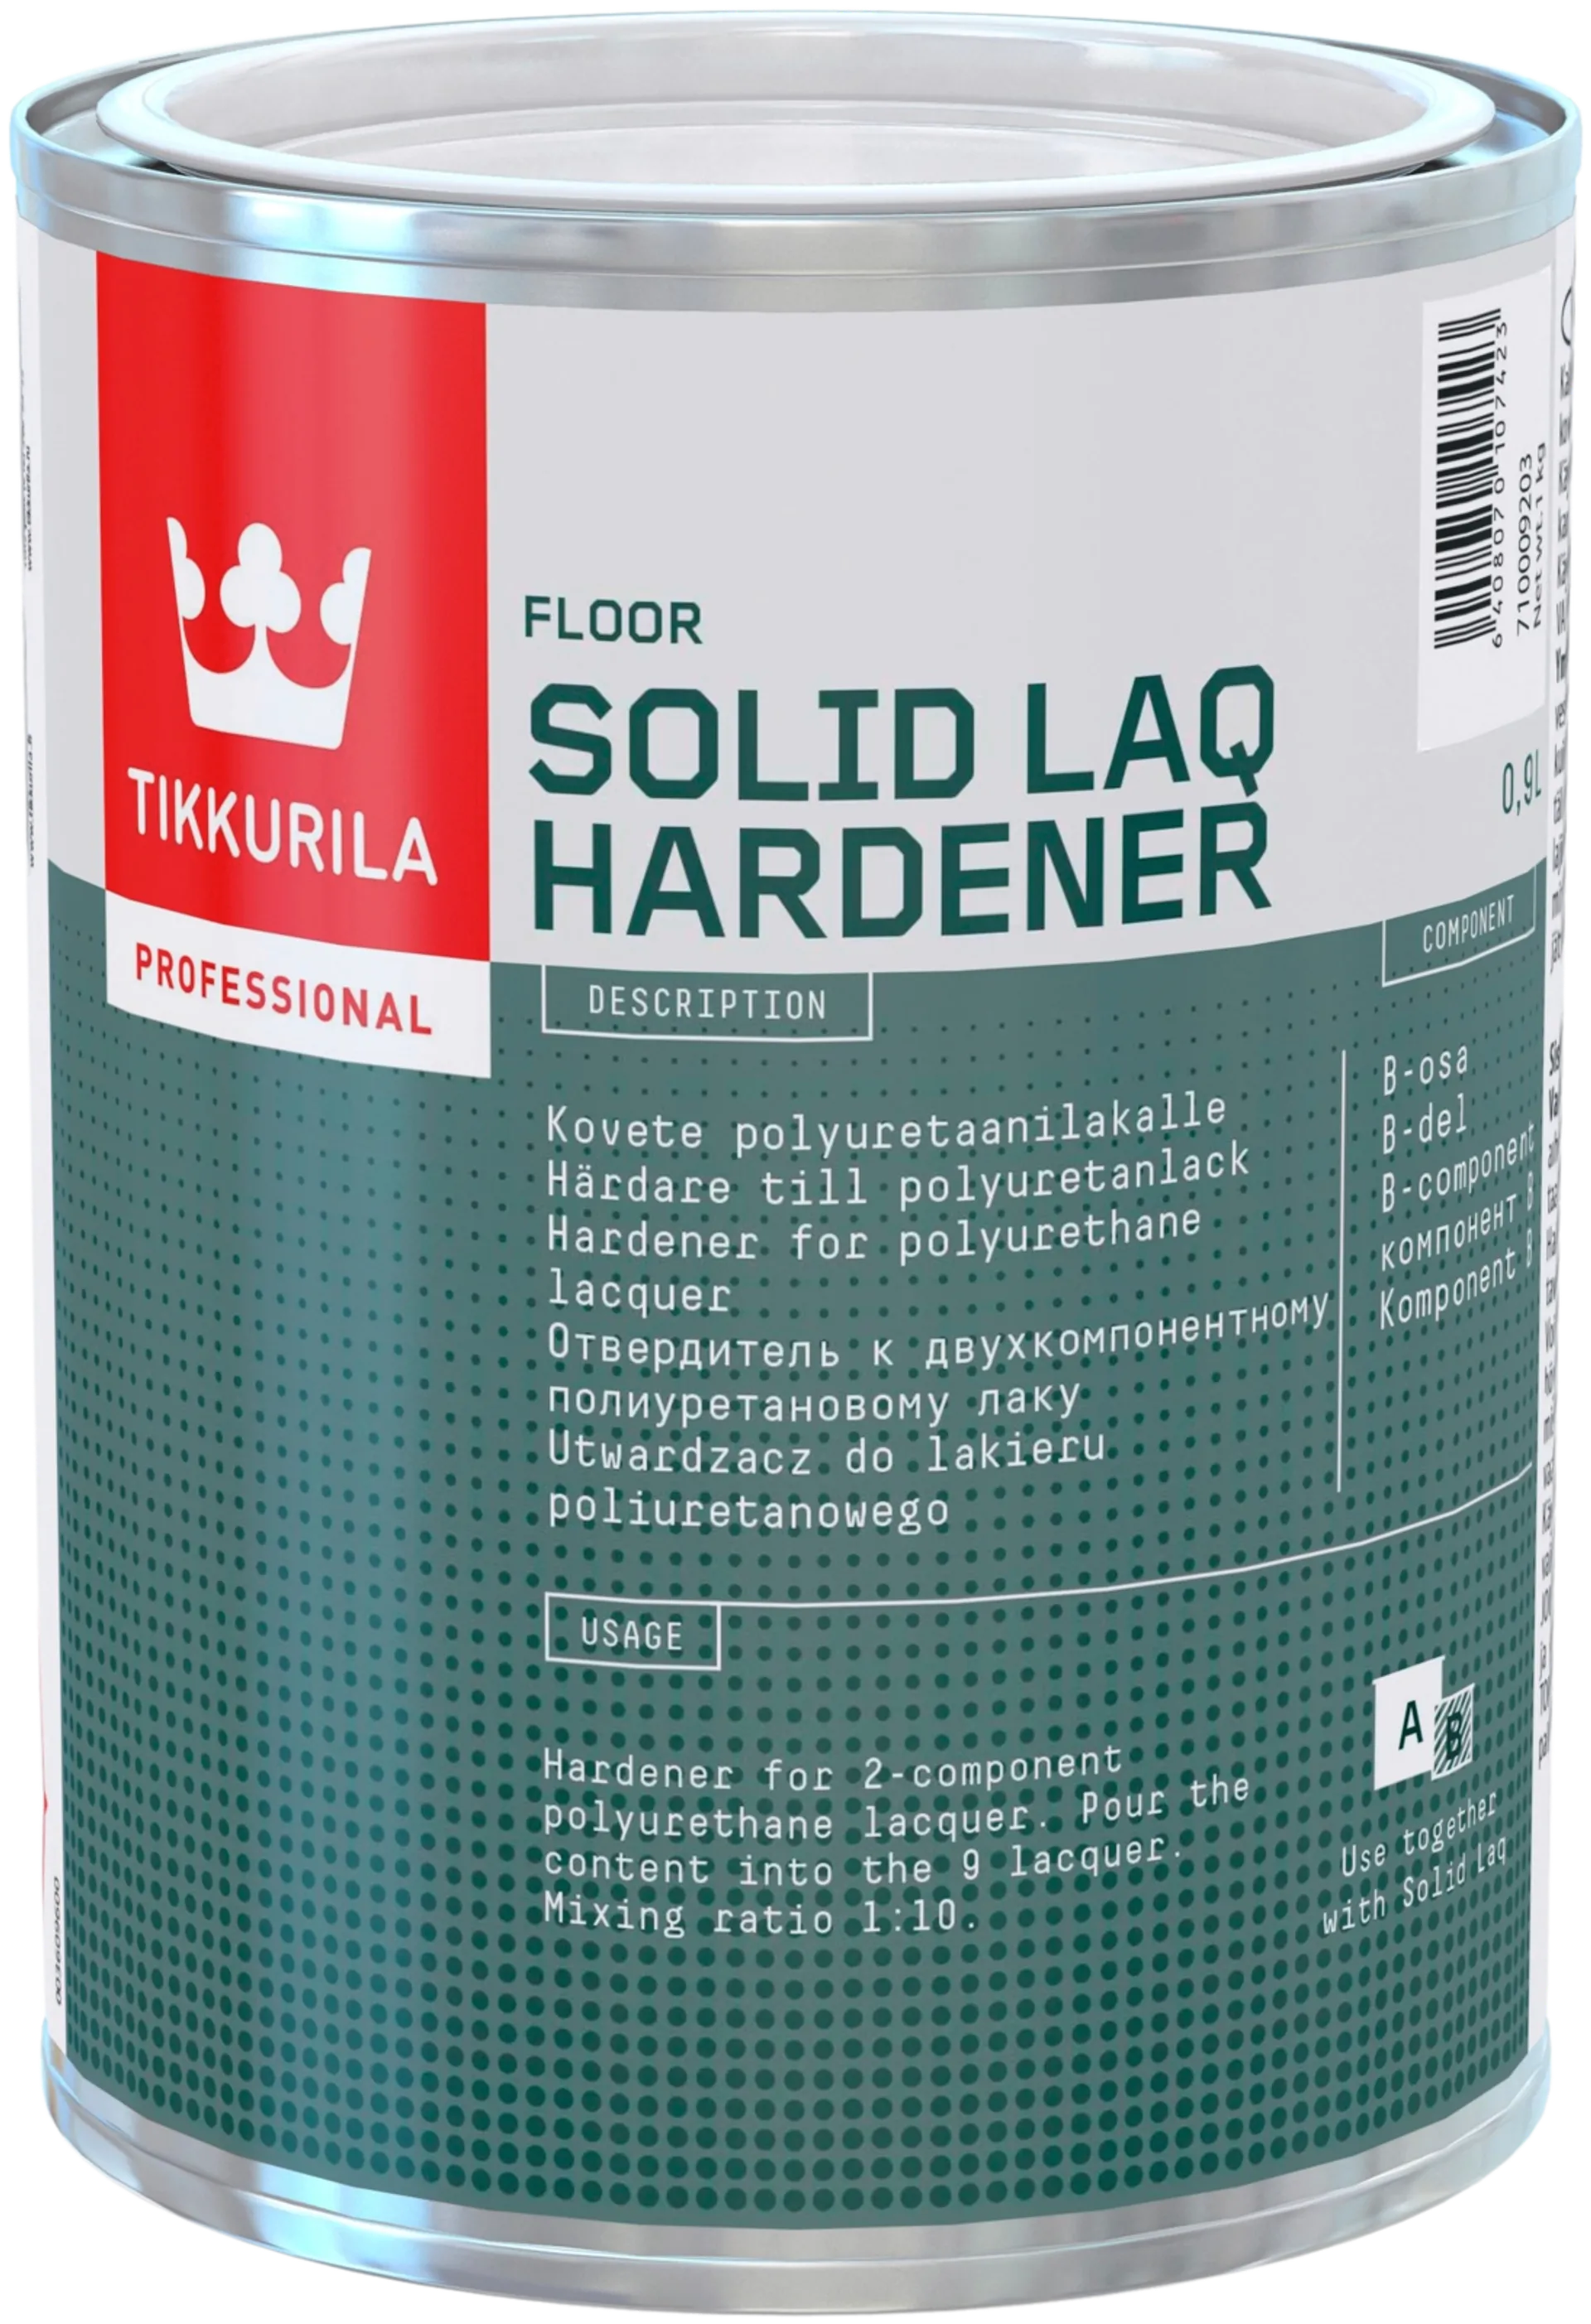 Tikkurila Solid Laq Hardener 0,9L kovete